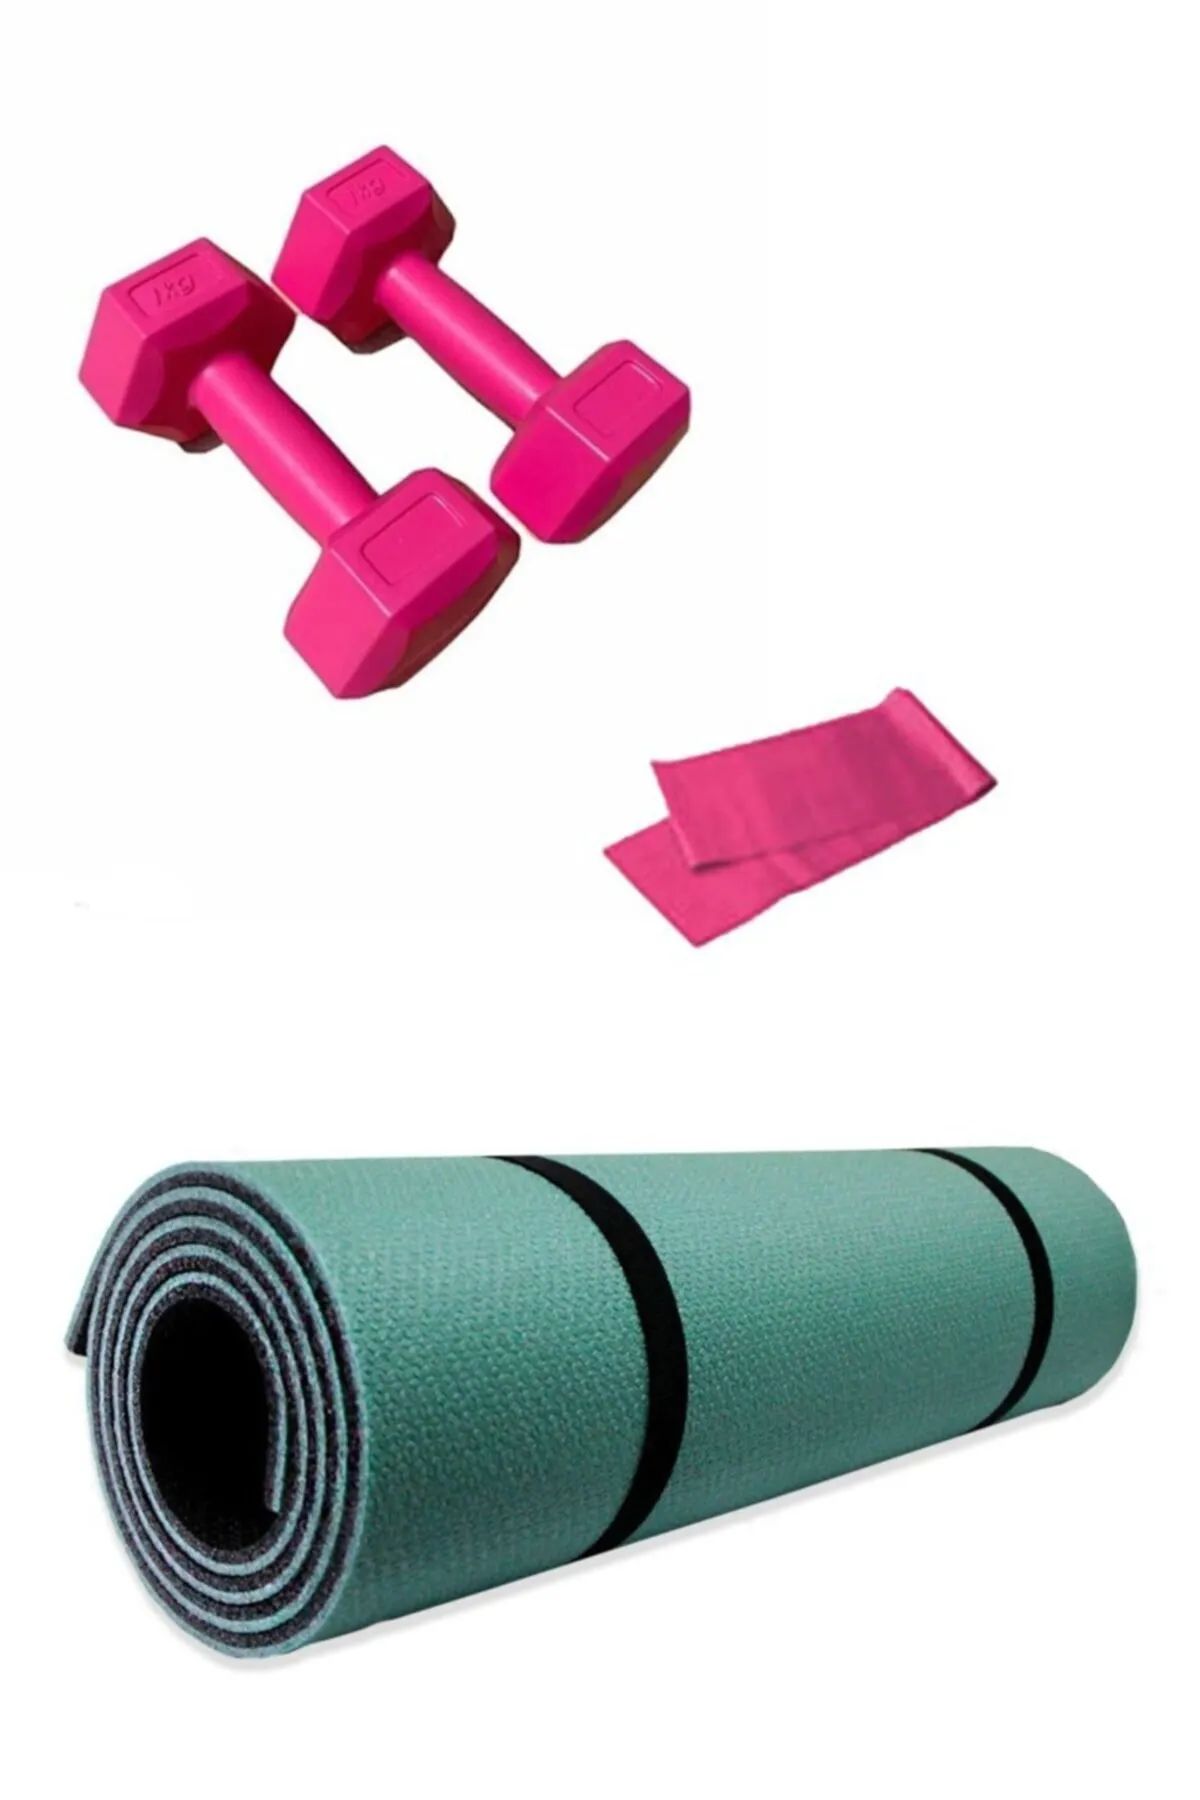 Haki 8mm Pilates Ve Yoga Matı +1 Kg Demir Tozlu Dambıl (2 Adet ) + Direnç Bandı